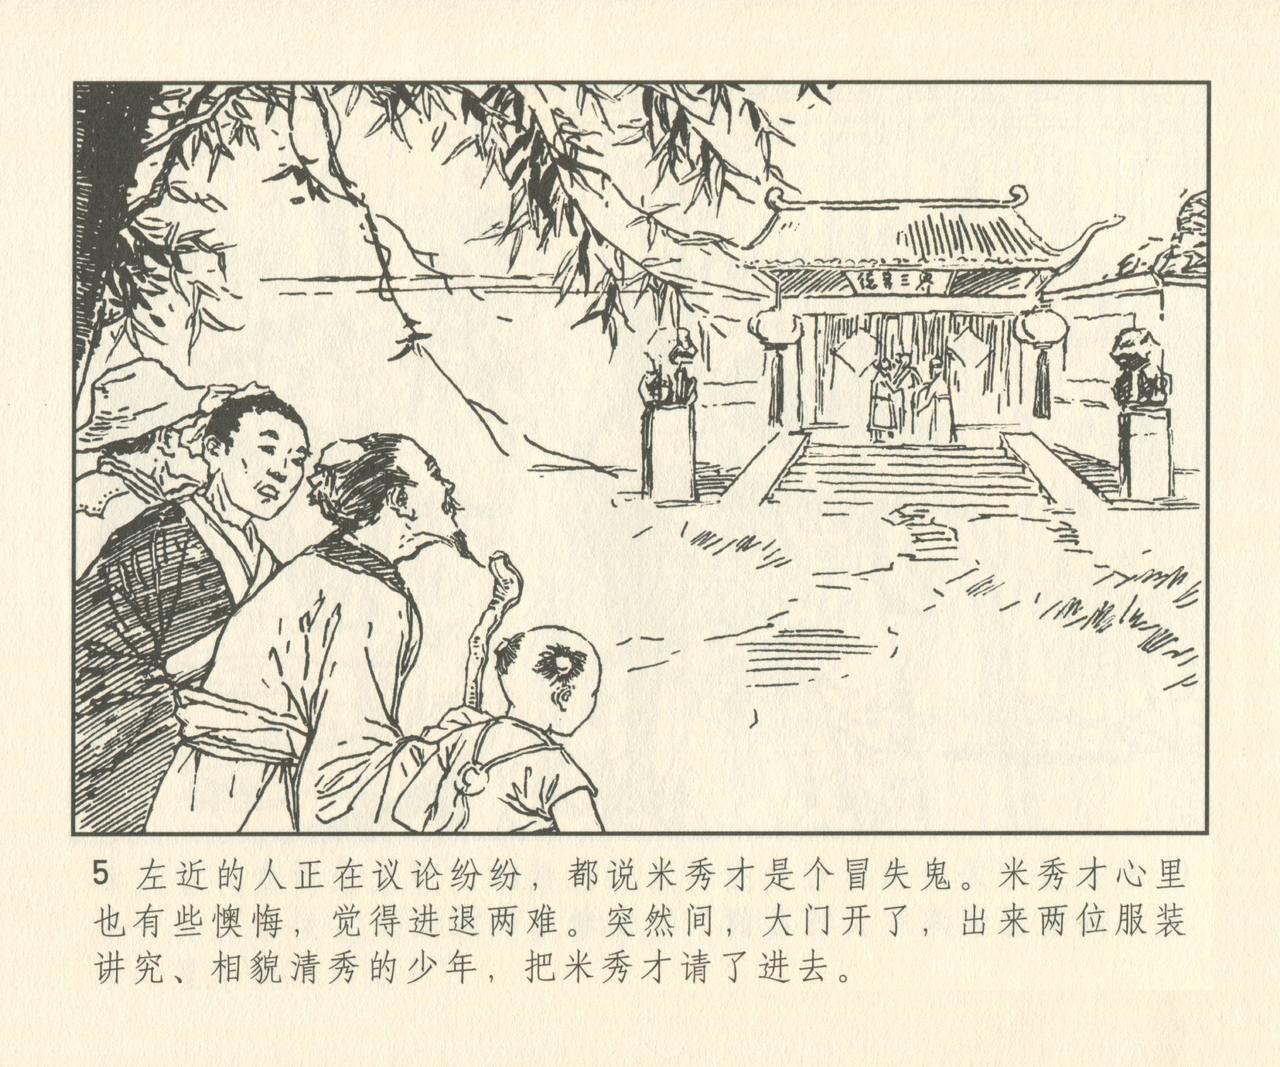 聊斋志异 张玮等绘 天津人民美术出版社 卷二十一 ~ 三十 133